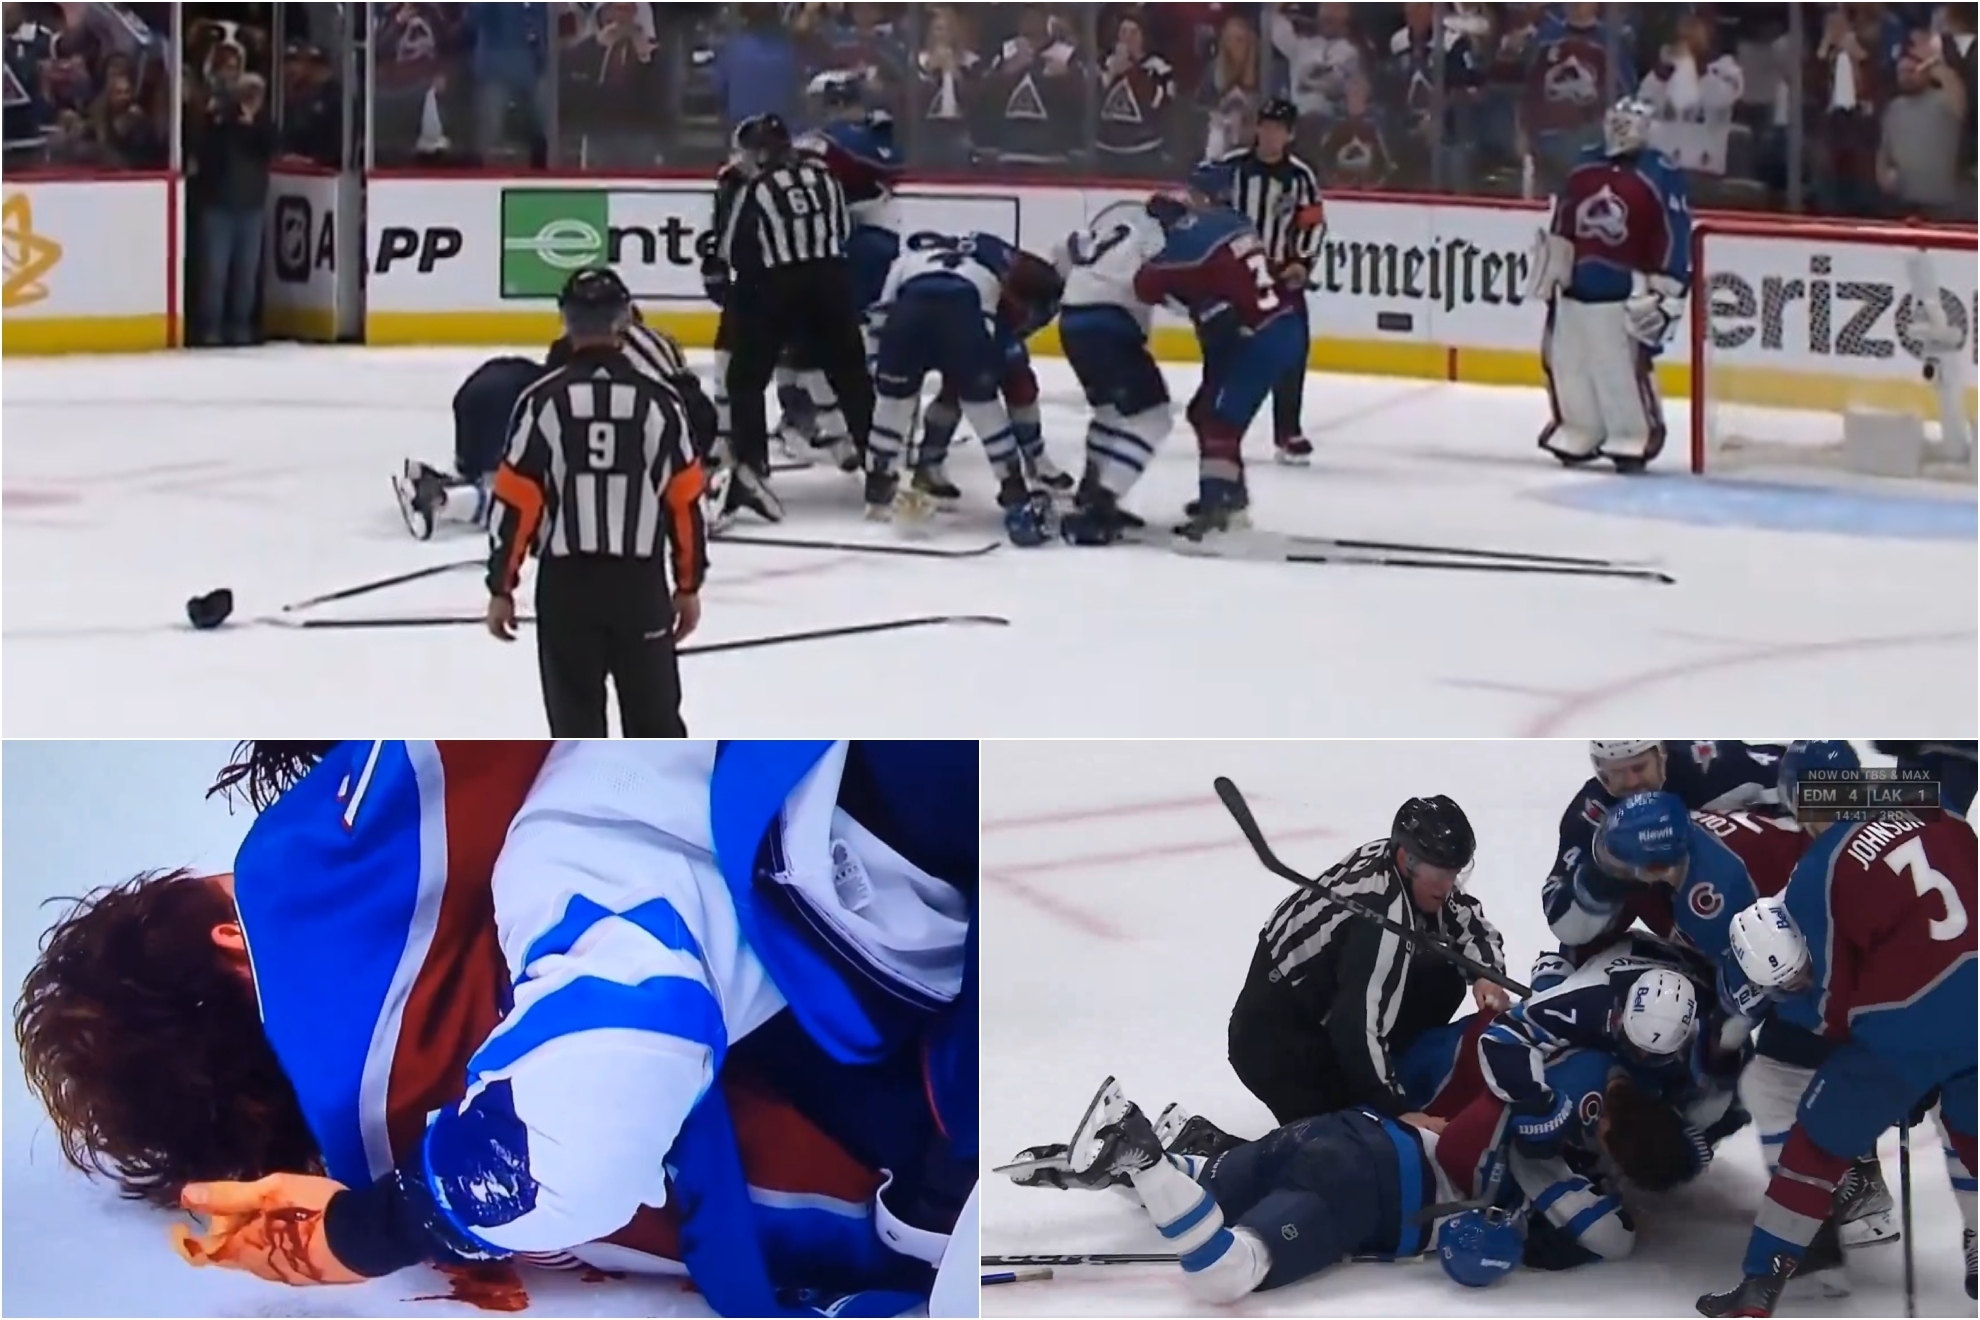 Pelea en la NHL: los dos equipos acaban a golpes y un jugador sangrando